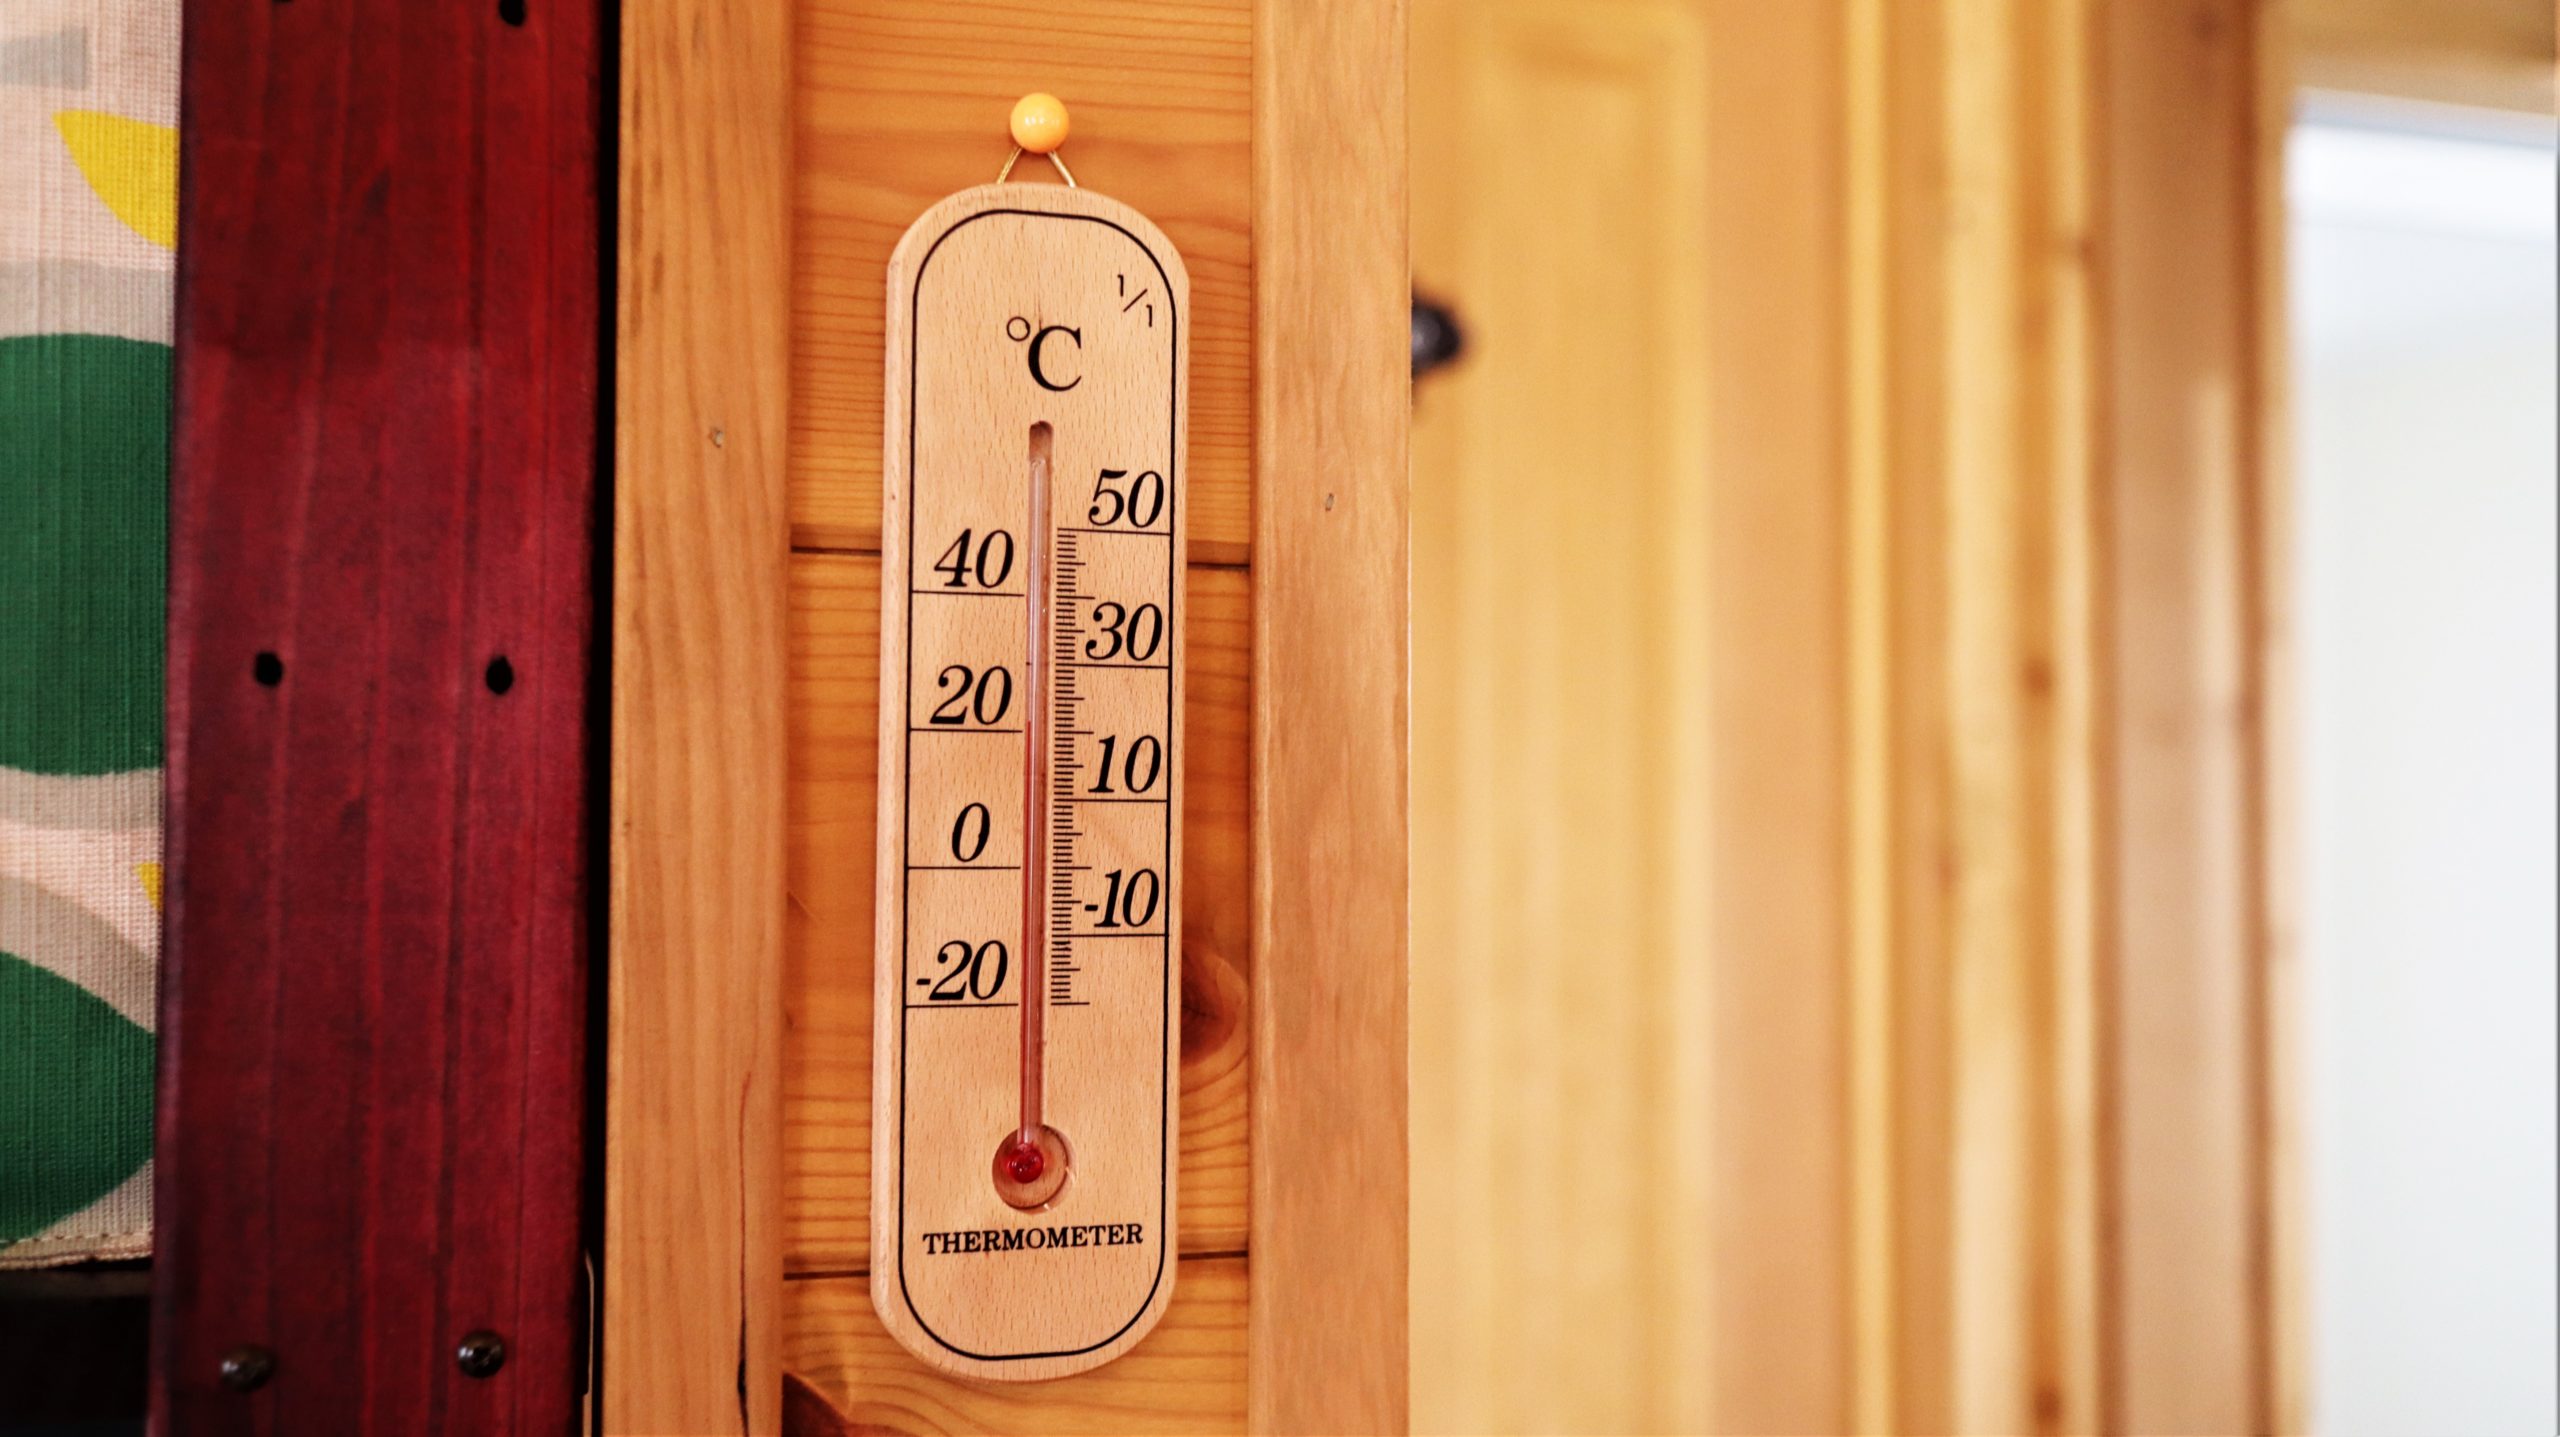 １００均で買った木の温度計がログハウスによく似合う